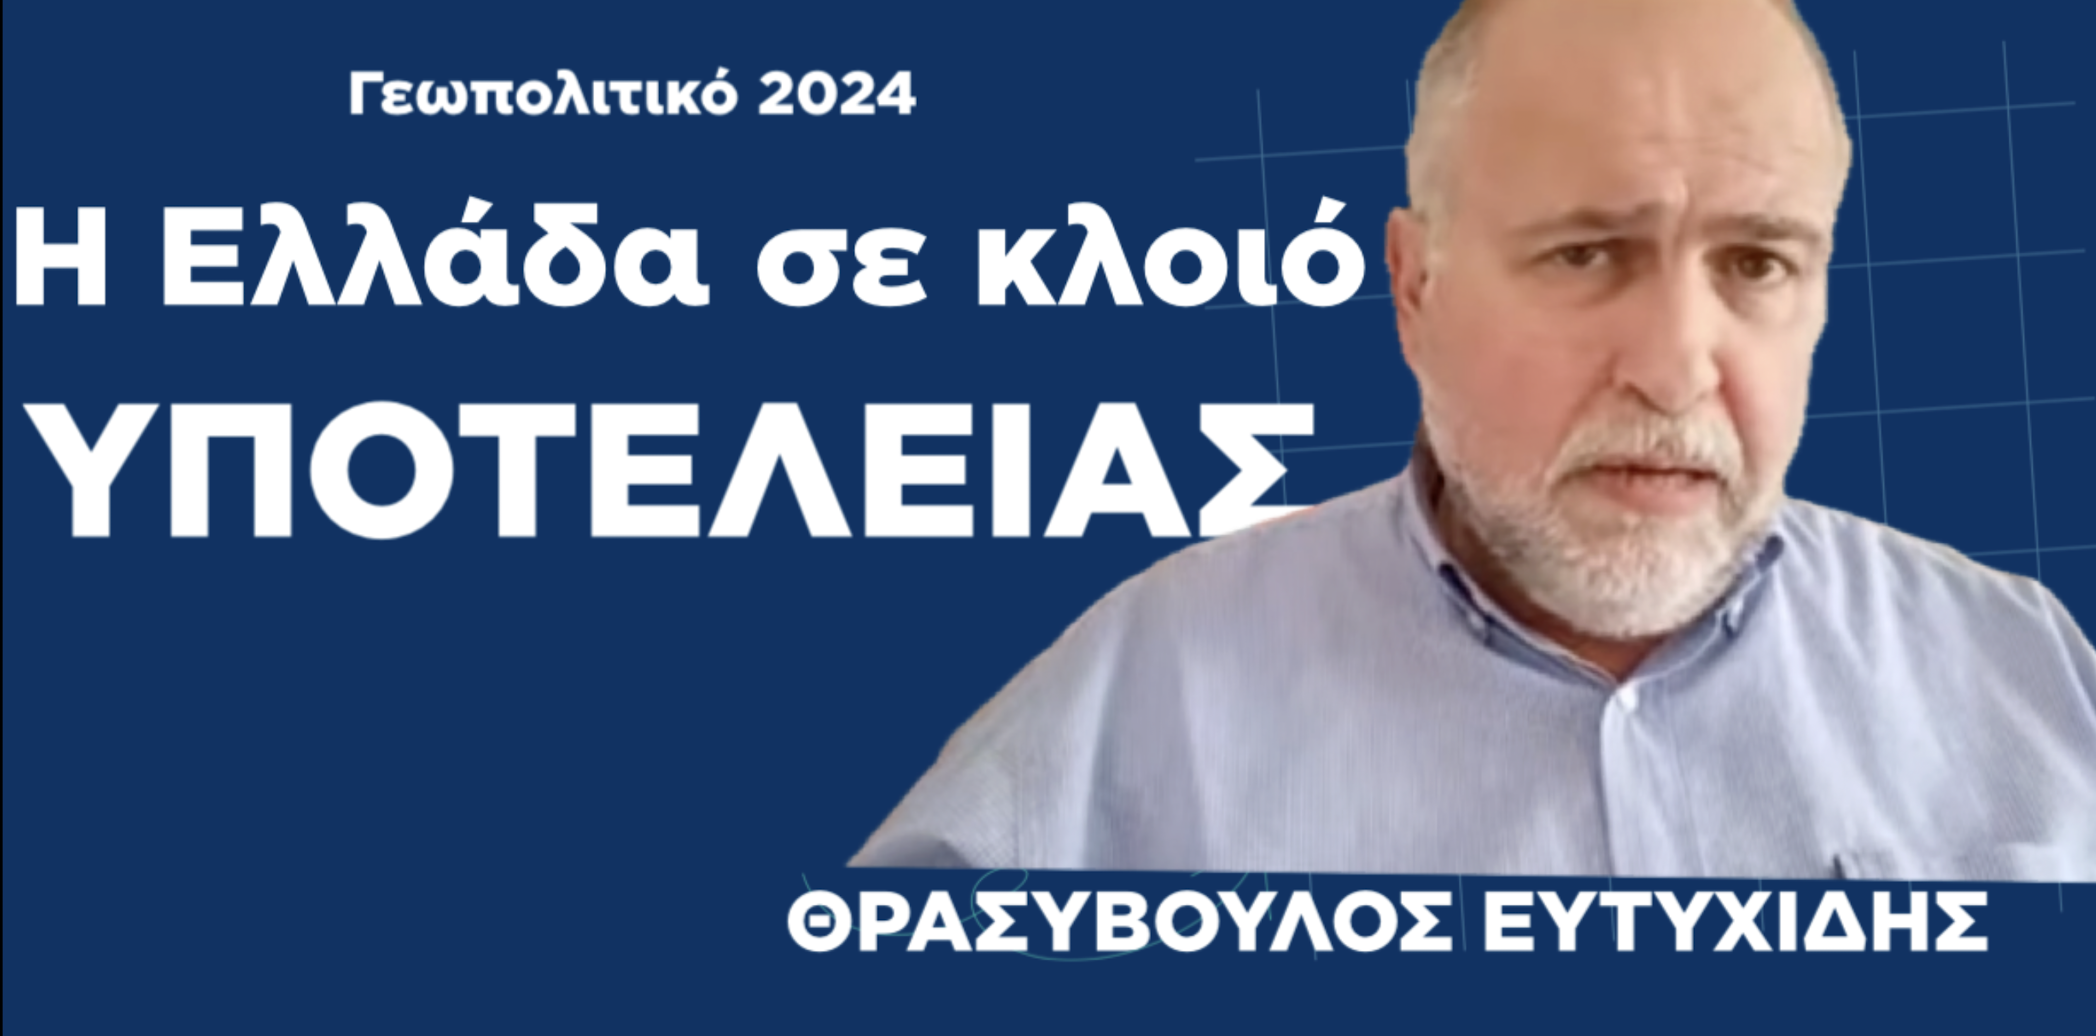 Γεωπολιτικό 2024: Σκοτάδι, αίμα και η Ελλάδα σε κλοιό υποτέλειας! Θρασύβουλος Ευτυχίδης